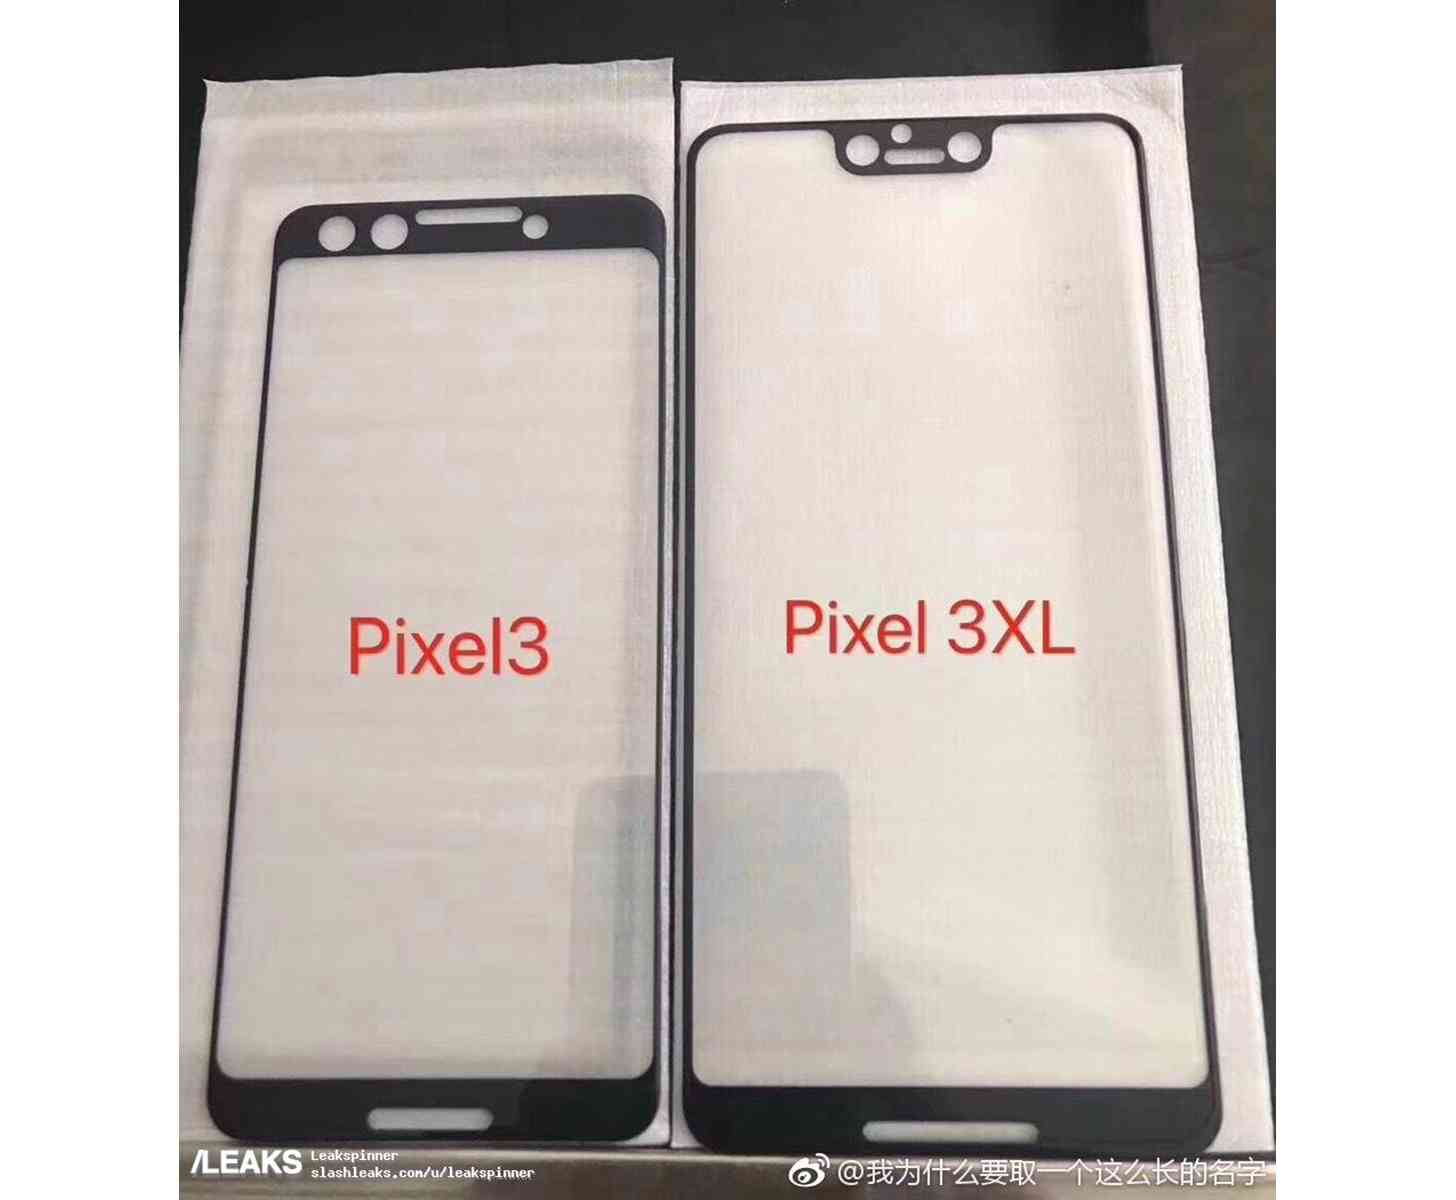 Google Pixel 3, Pixel 3 XL screen design leak